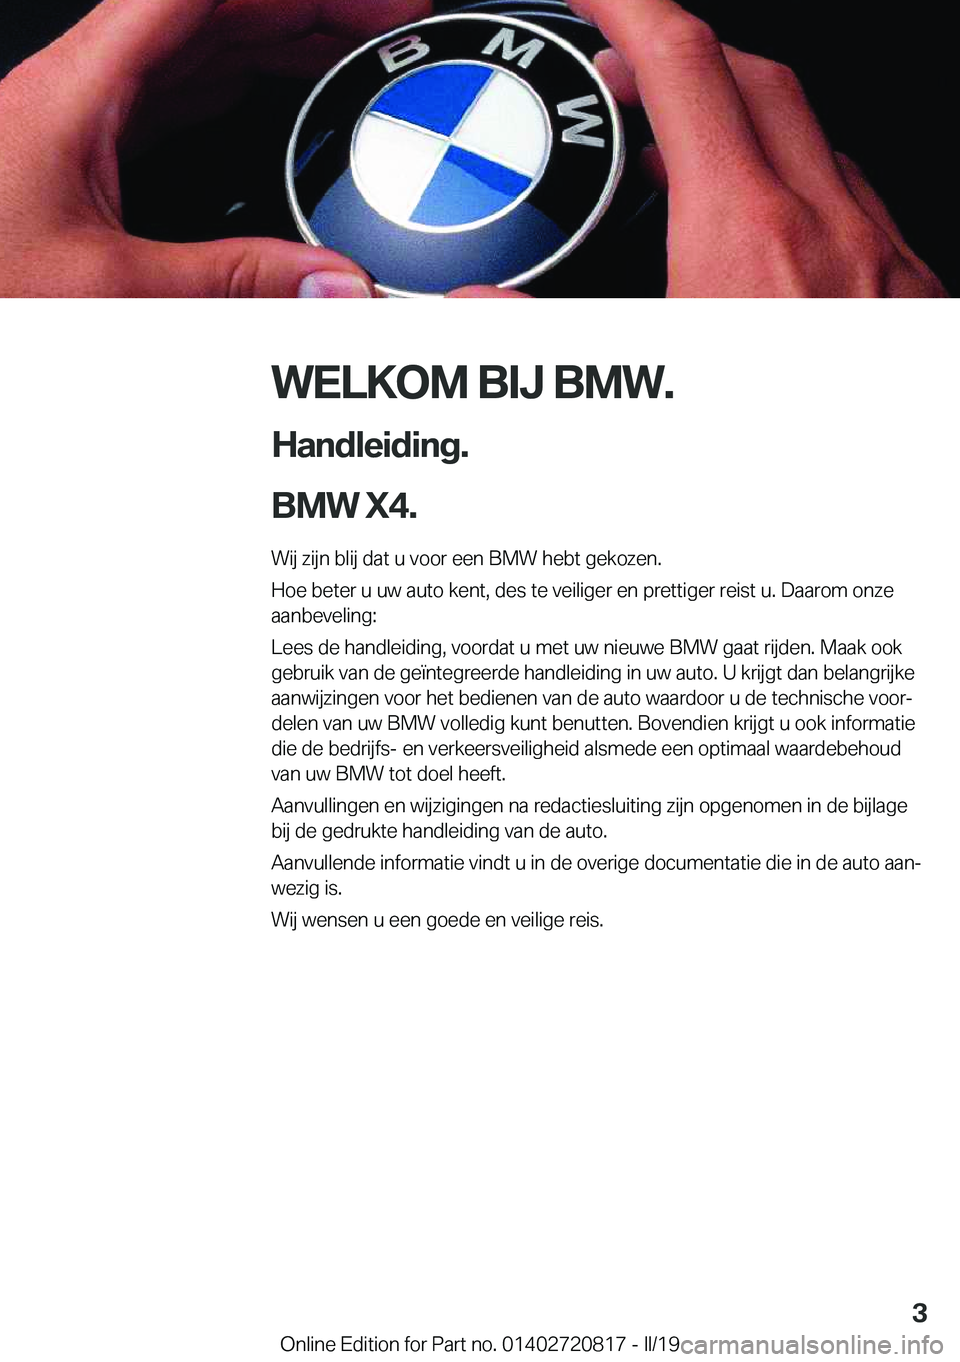 BMW X4 2019  Instructieboekjes (in Dutch) �W�E�L�K�O�M��B�I�J��B�M�W�.
�H�a�n�d�l�e�i�d�i�n�g�.
�B�M�W��X�4�. �W�i�j��z�i�j�n��b�l�i�j��d�a�t��u��v�o�o�r��e�e�n��B�M�W��h�e�b�t��g�e�k�o�z�e�n�.�H�o�e��b�e�t�e�r��u��u�w��a�u�t�